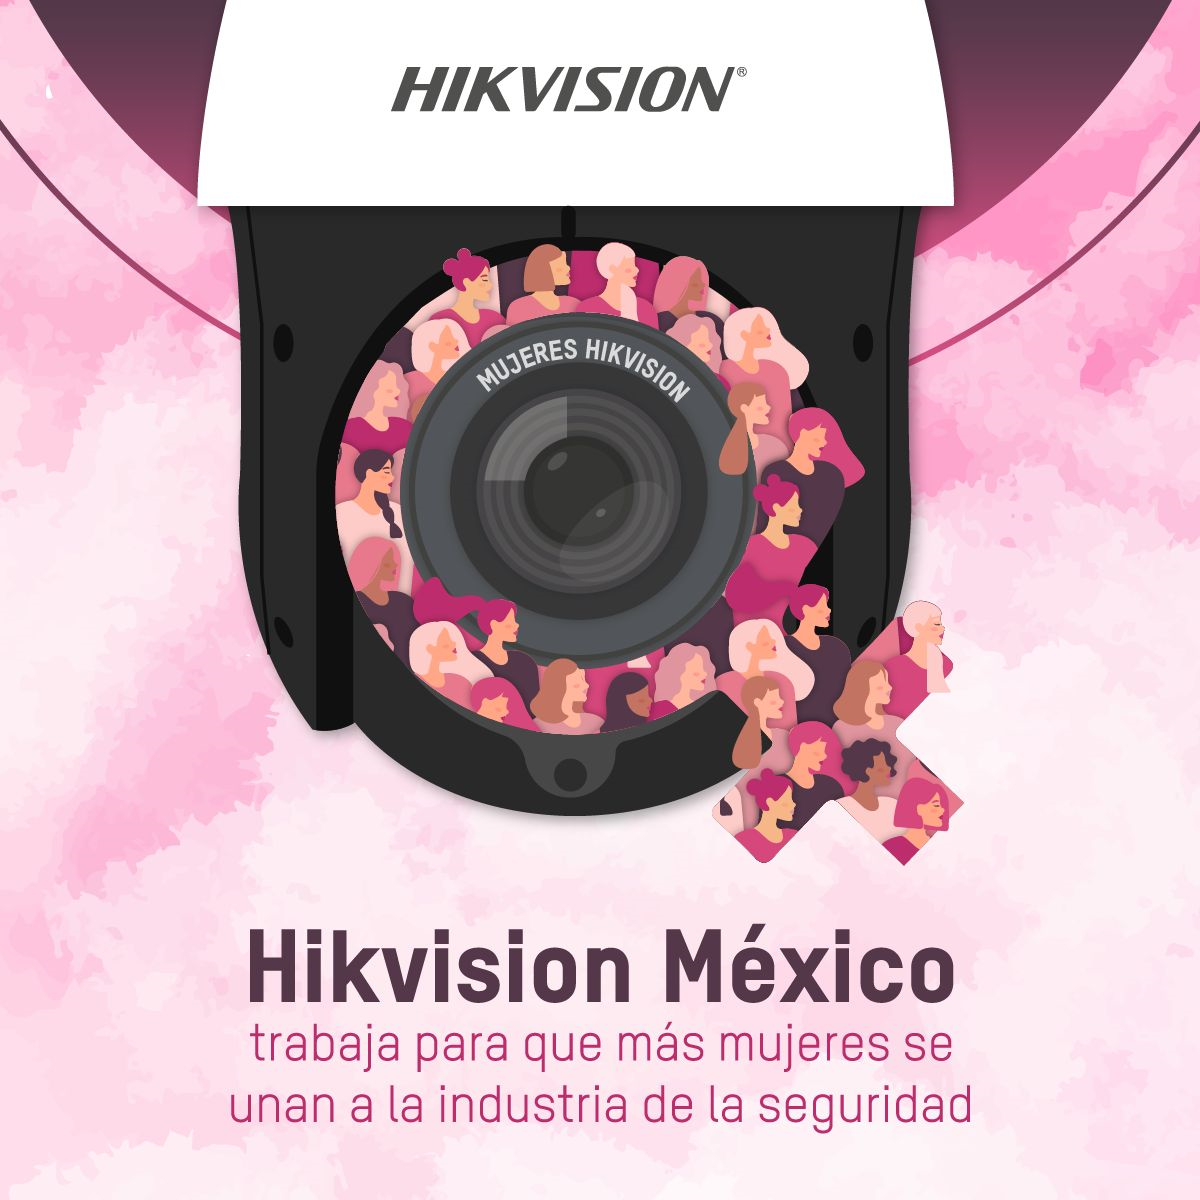 Hikvision México trabaja para que más mujeres se unan a la industria de la seguridad